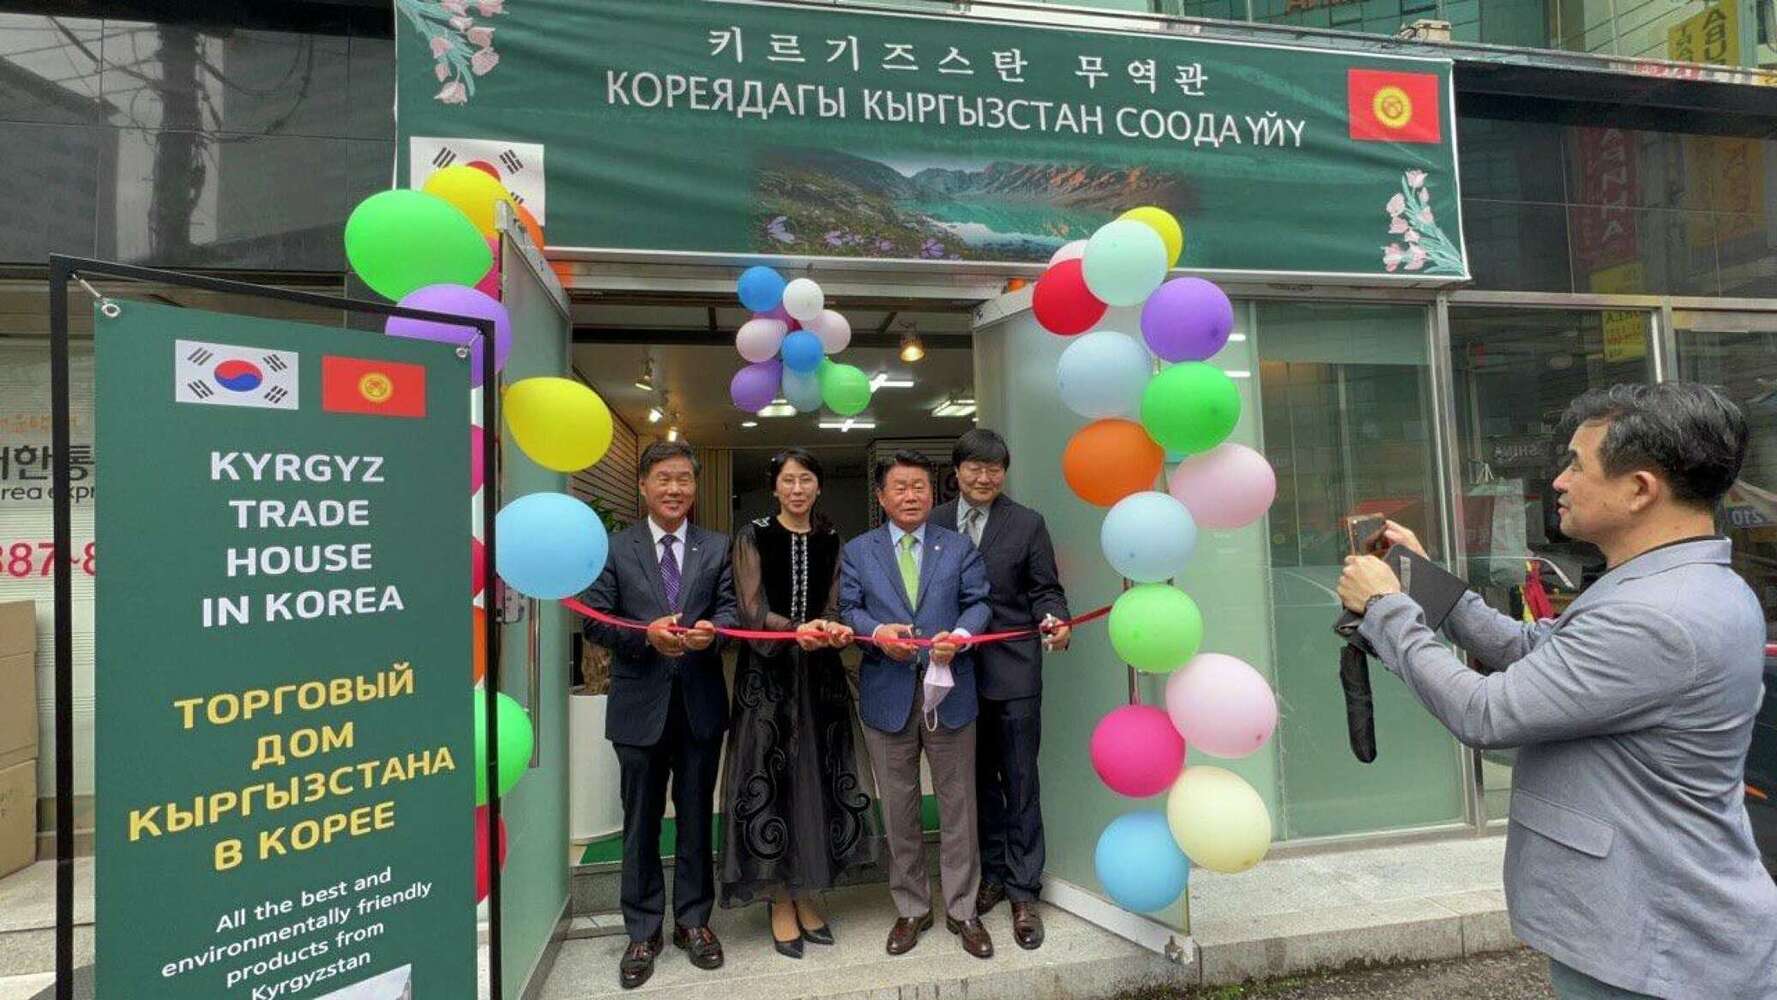 В Корее открылся торговый дом Кыргызстана — какие товары выставили. Фото — Today.kg